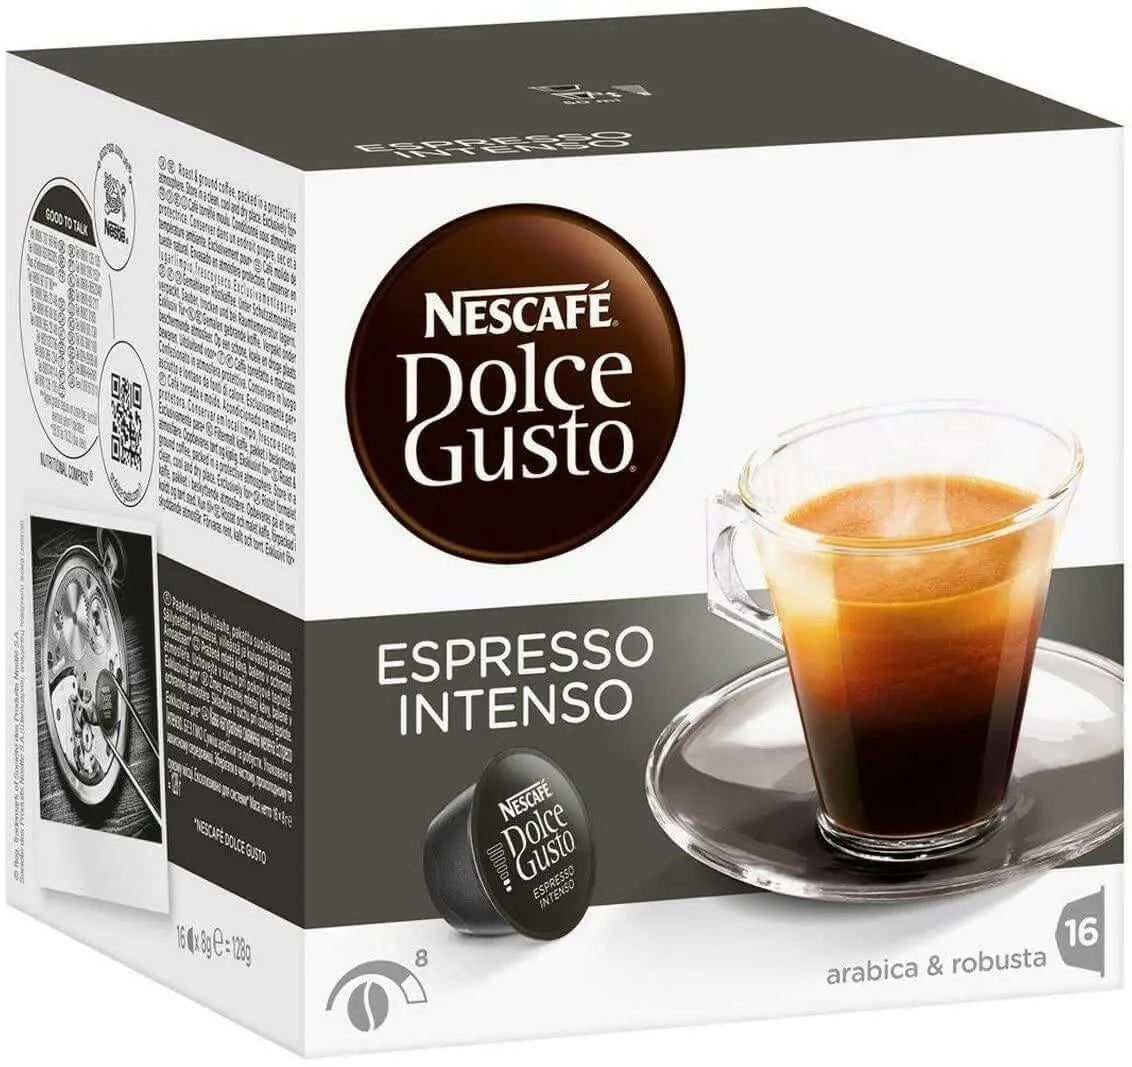 Nescafe Dolce Gusto Espresso Intenso - 16 Capsules - 16 Drinks